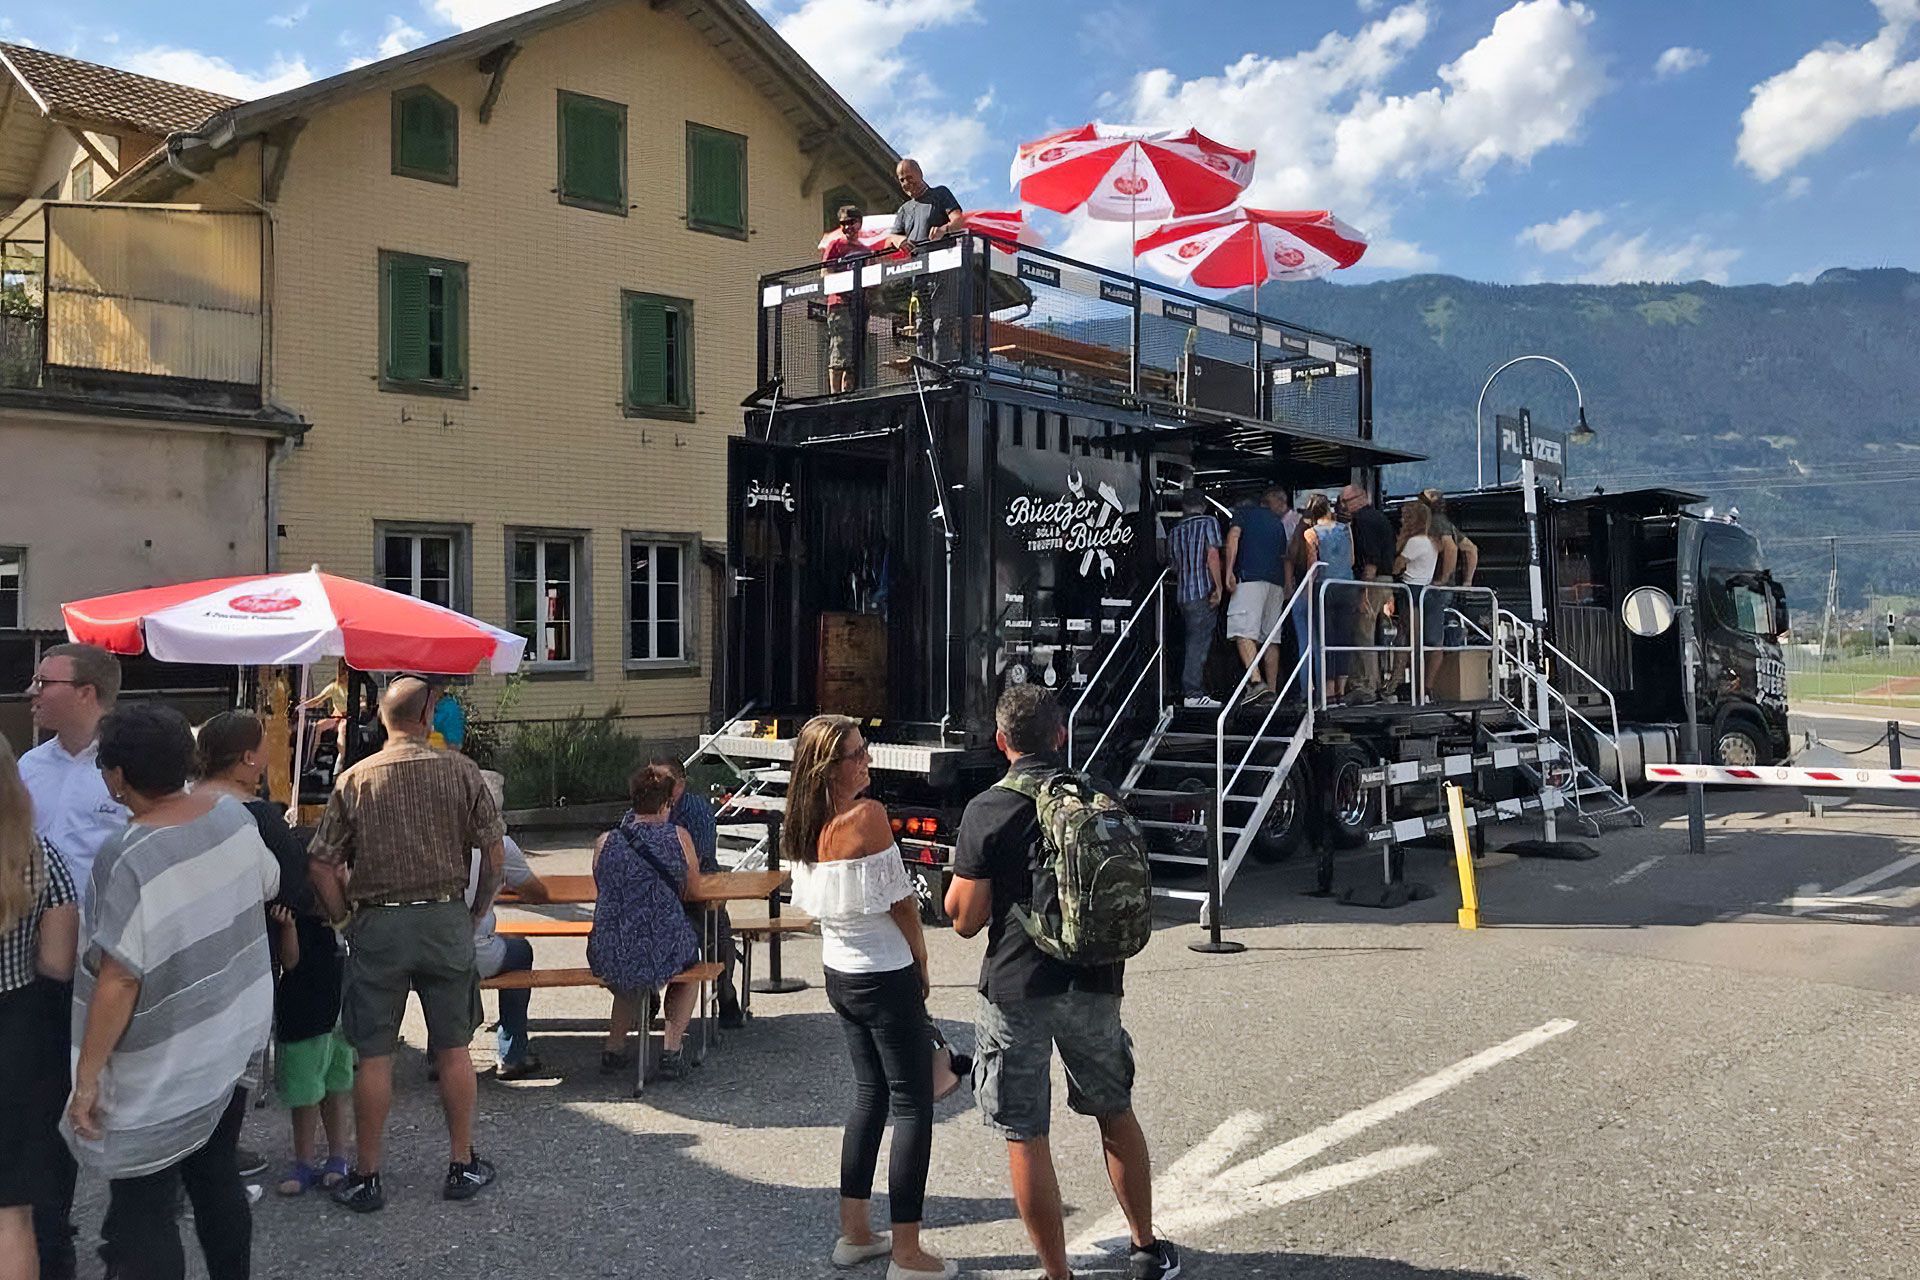 Besucher versammeln sich um den Planzer Event-Truck mit Dachterrasse und Sonnenschirmen bei einem öffentlichen Event an einem sonnigen Tag.